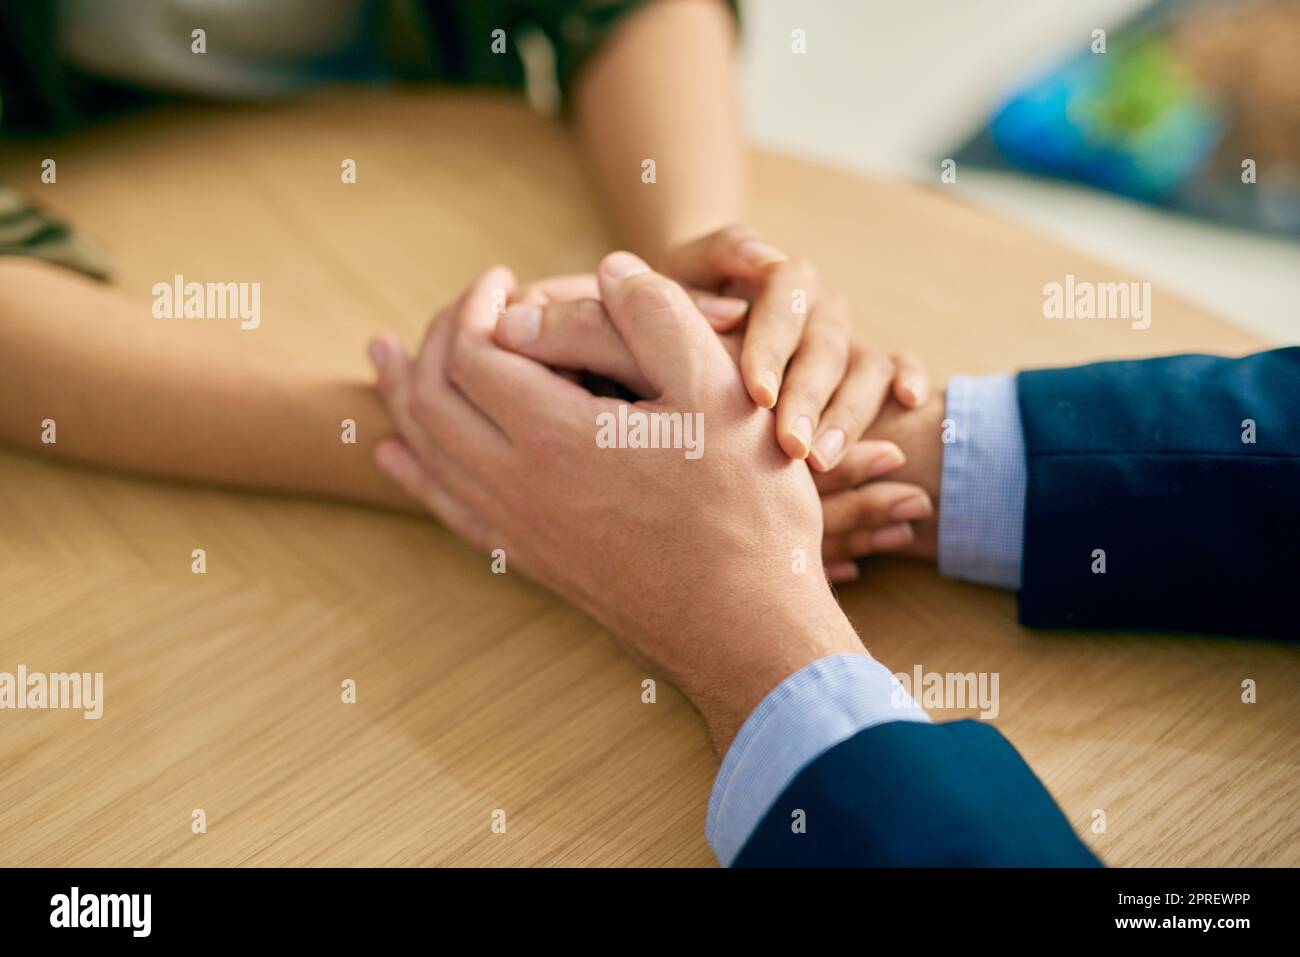 Mitgefühl, das Herz der Menschheit. Ein Geschäftsmann und eine Geschäftsfrau halten barmherzig die Hände an einem Tisch. Stockfoto